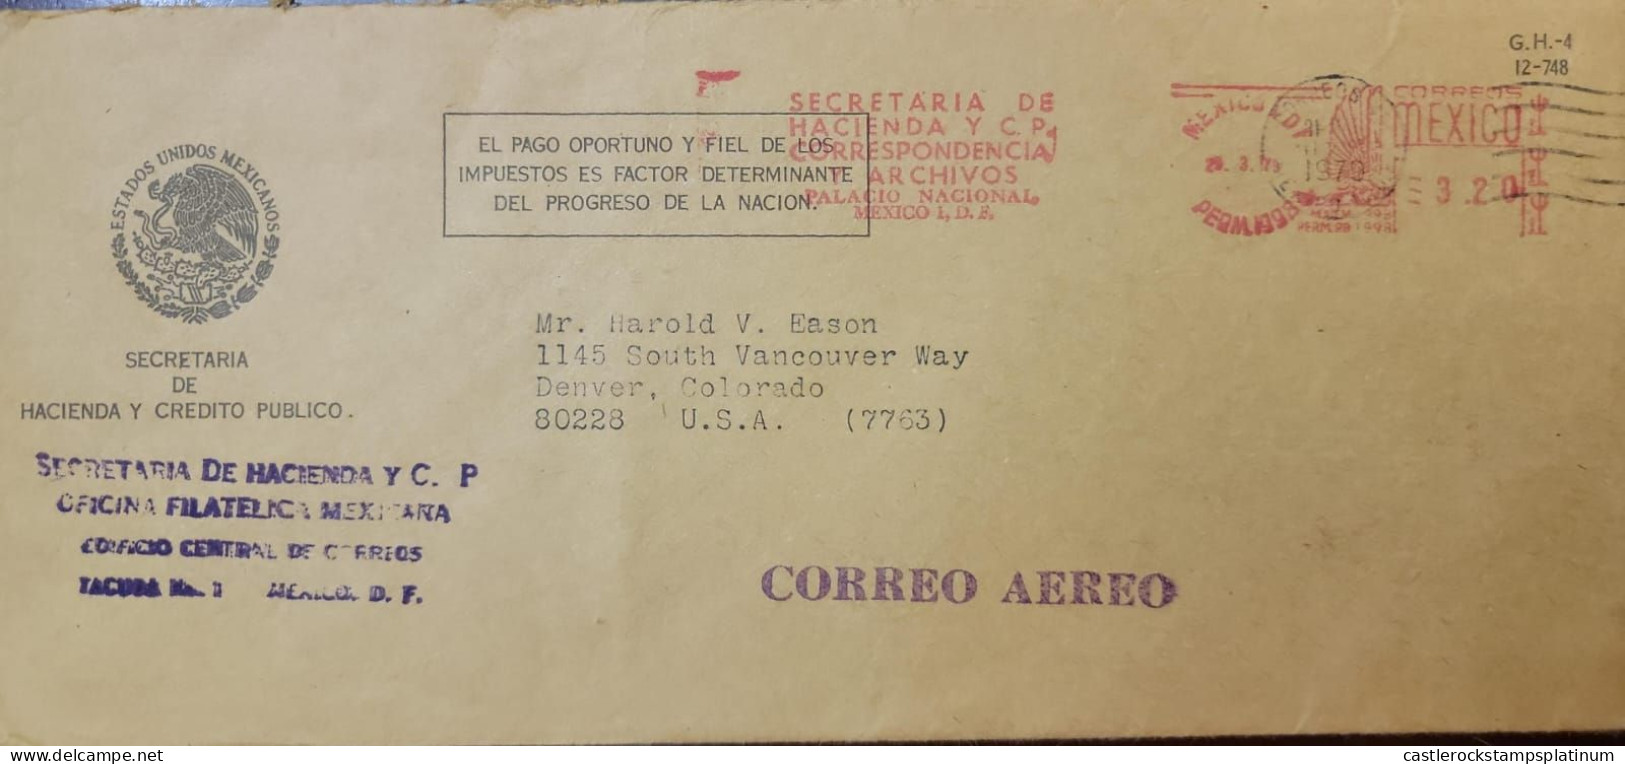 O) 1979 MEXICO, METERSTAMP, SECRETARIA DE HACIENDA Y C.P - ESTADOS UNIDOS MEXICANOS, CIRCULATED TO USA - Mexique